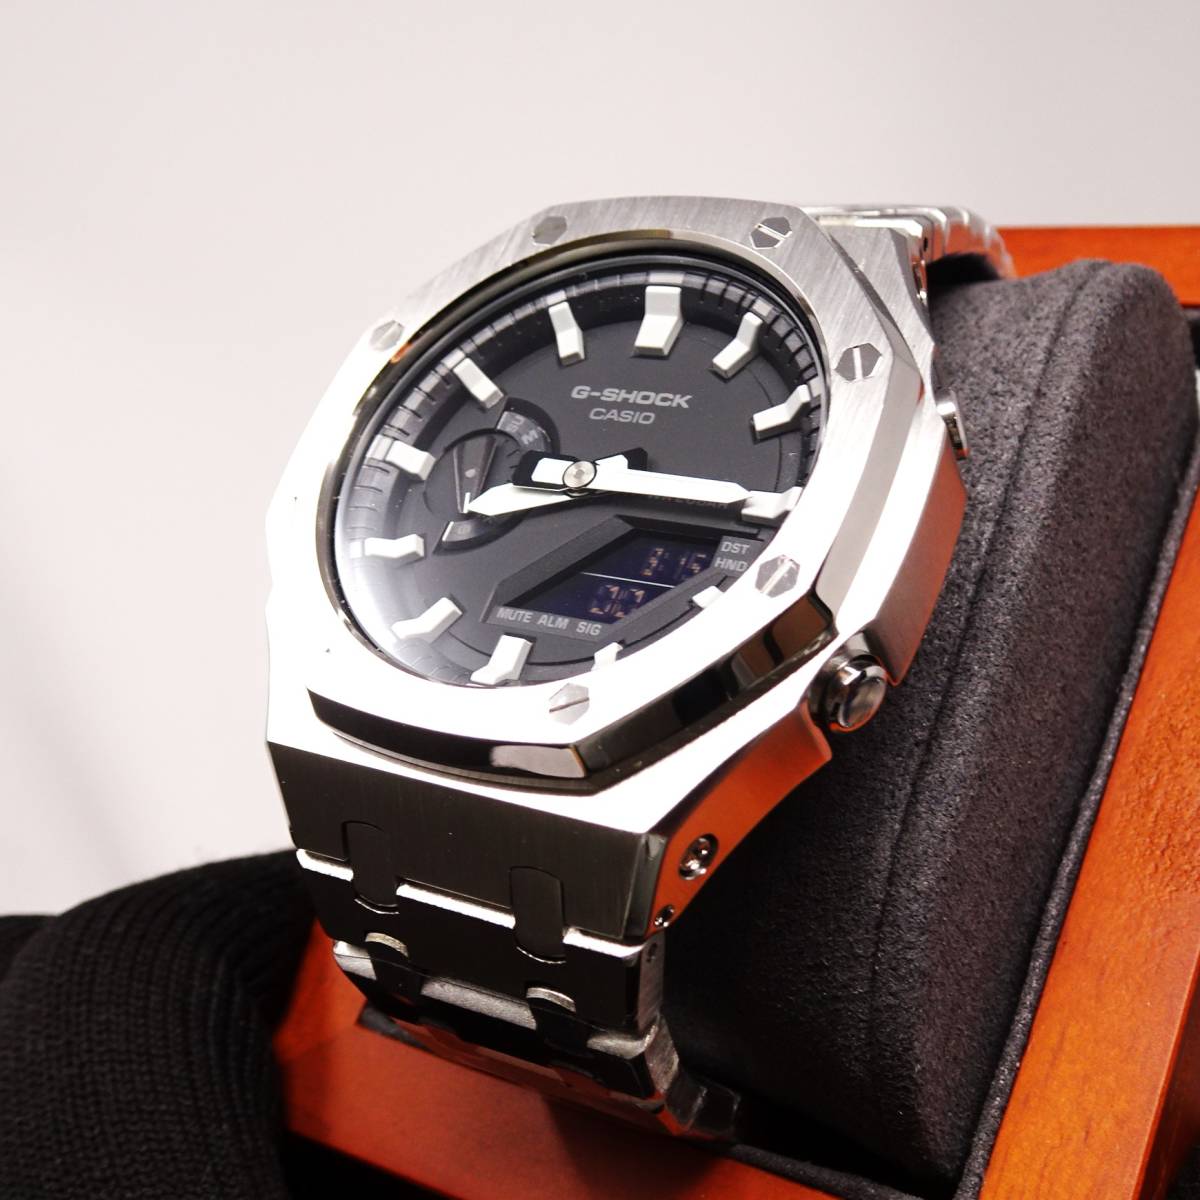 送料無料・新品・Gショックカスタム本体付きGA2100海外オールステンレス製シルバーベゼルベルトモデルメンズ腕時計・カシオーク・の画像2